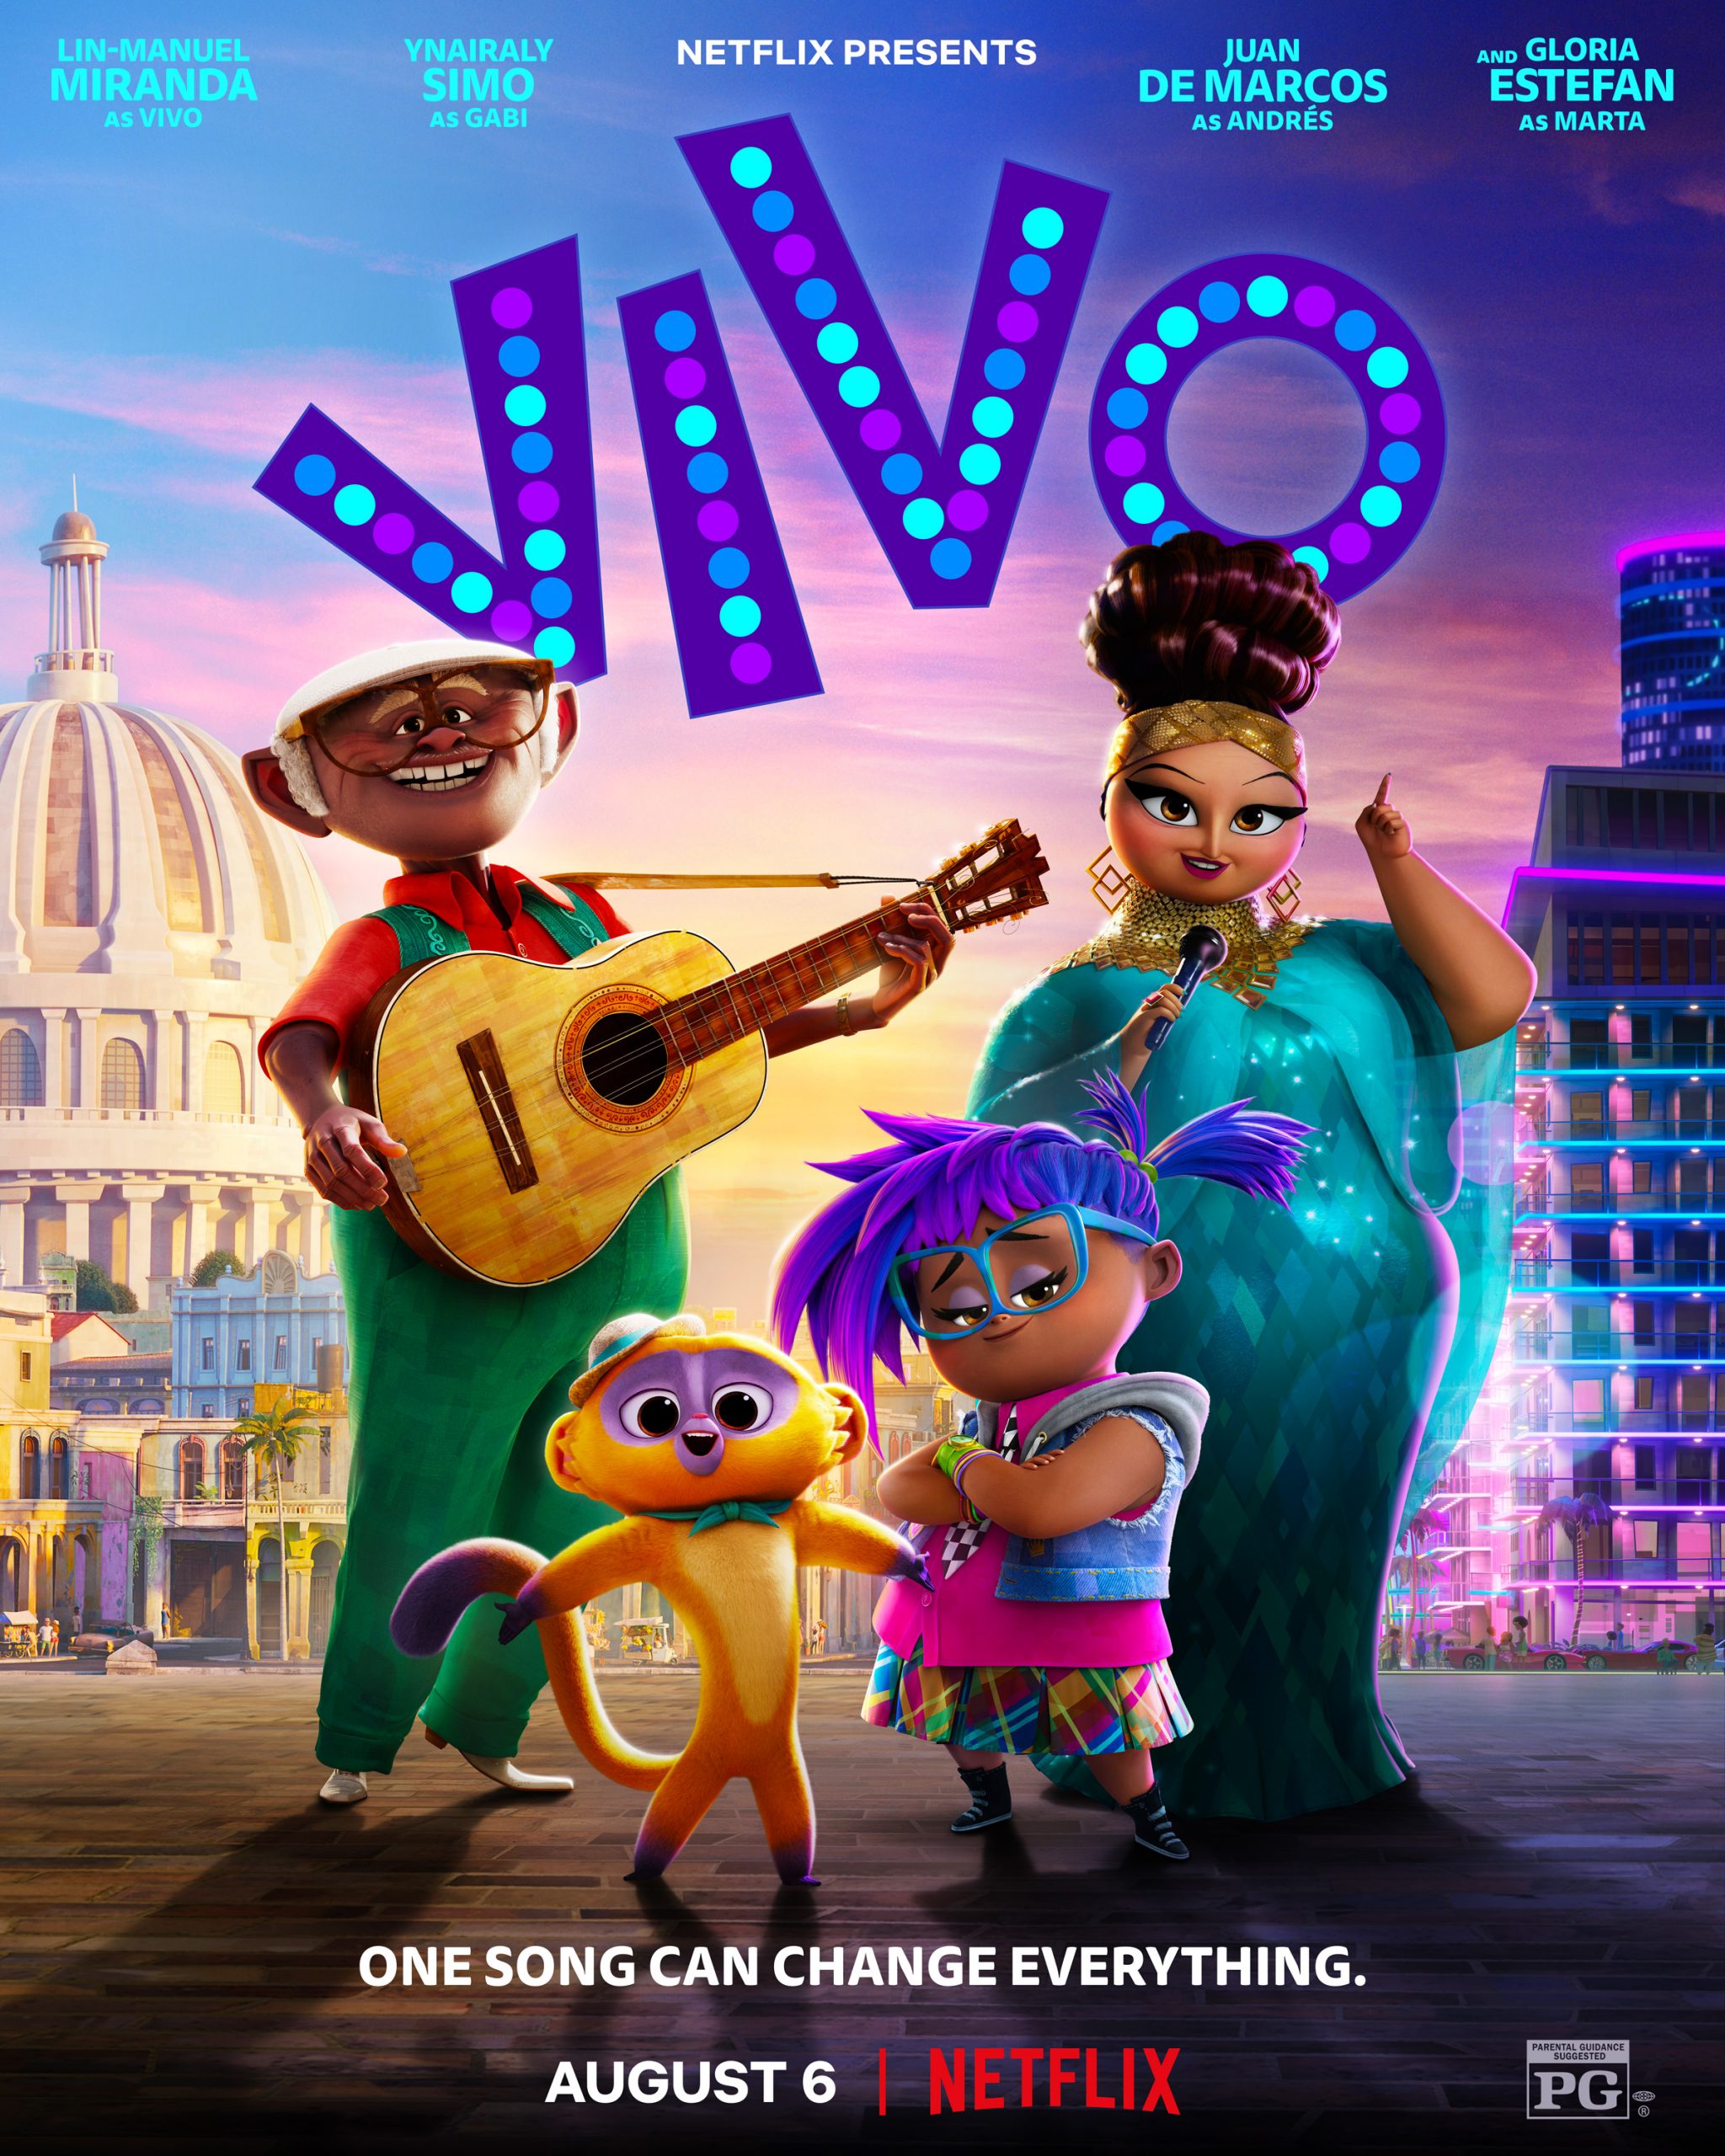 Phim hoạt hình Vivo câu chuyện về tình yêu âm nhạc